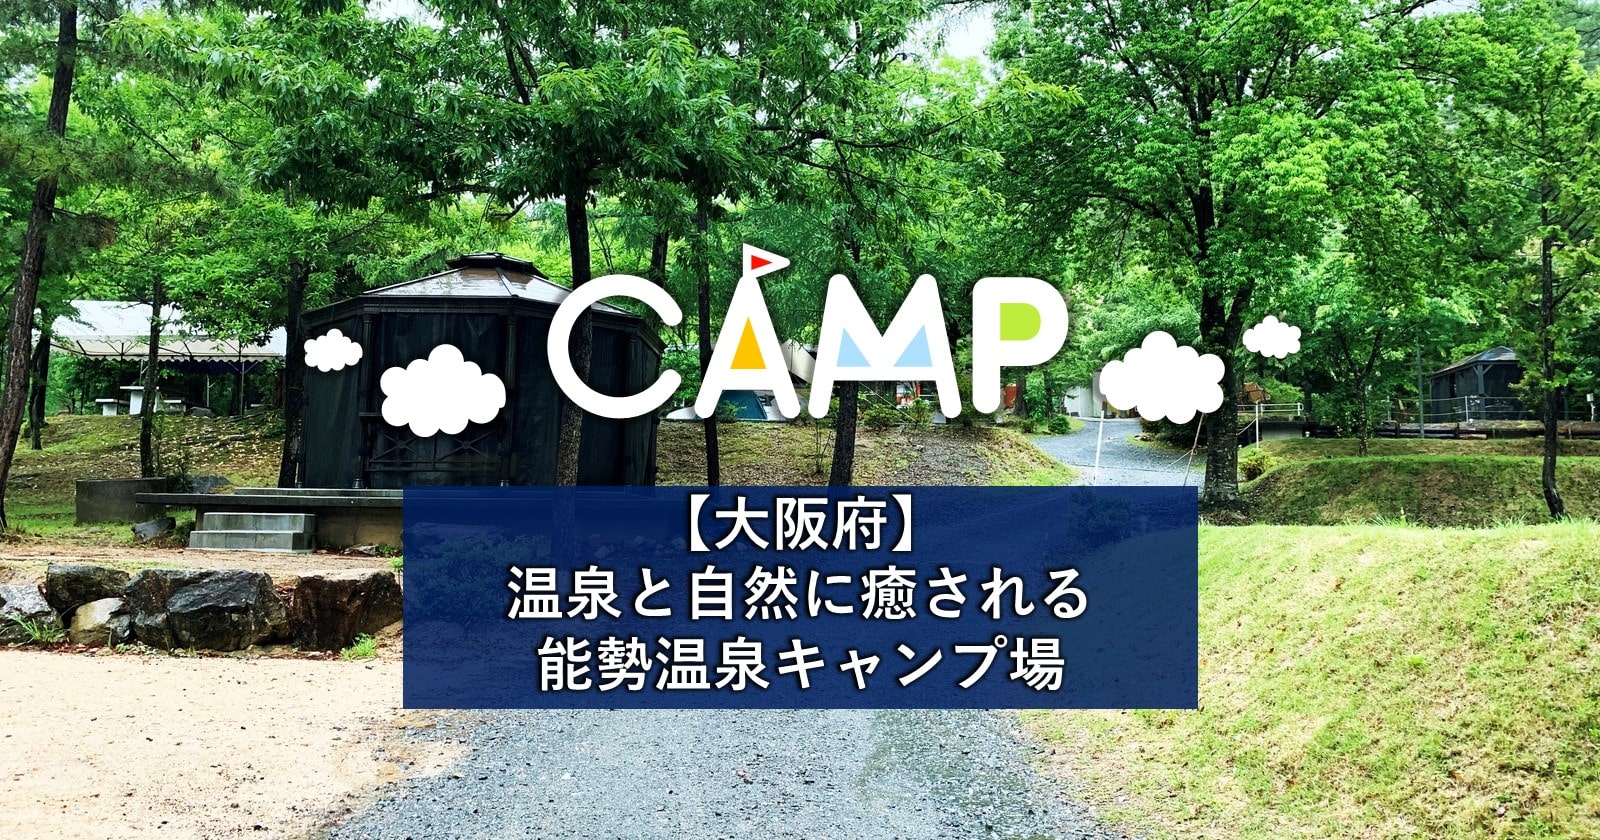 温泉 場 能勢 キャンプ